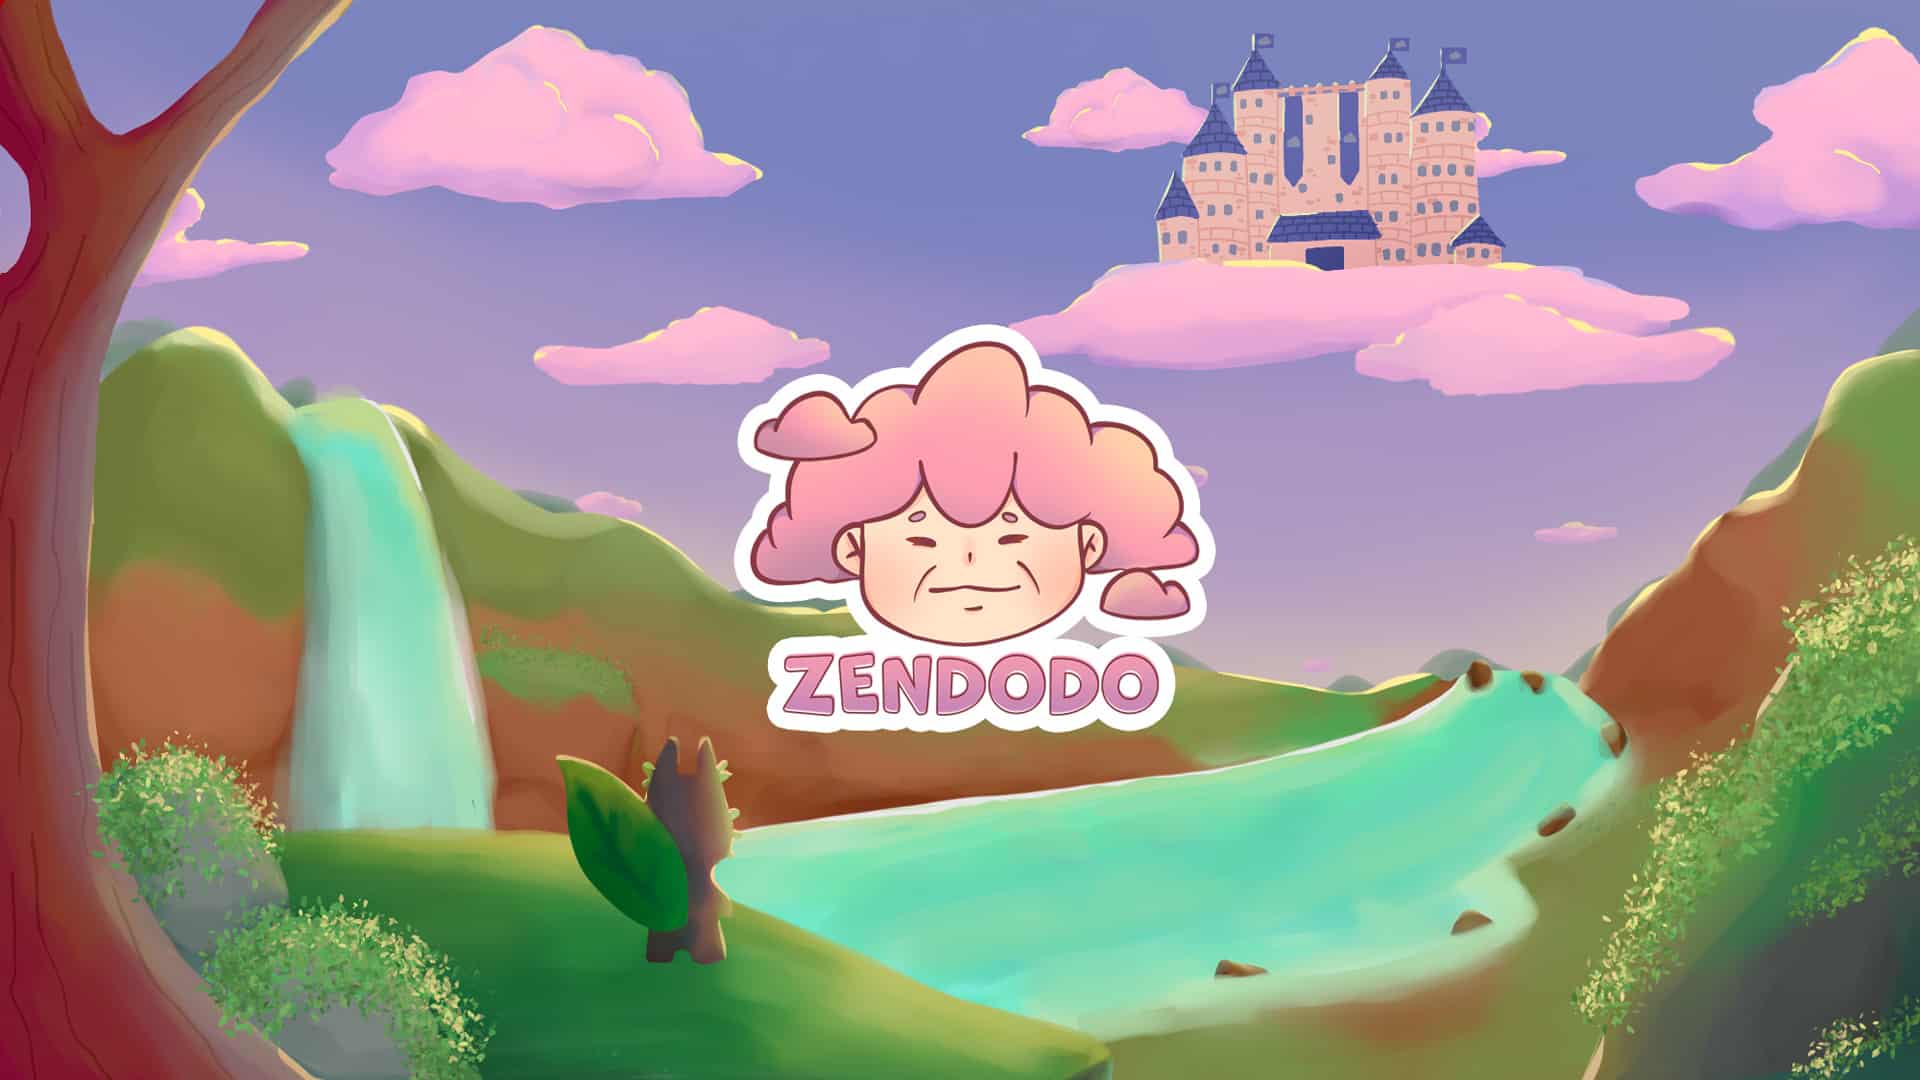 Zendodo Party Review